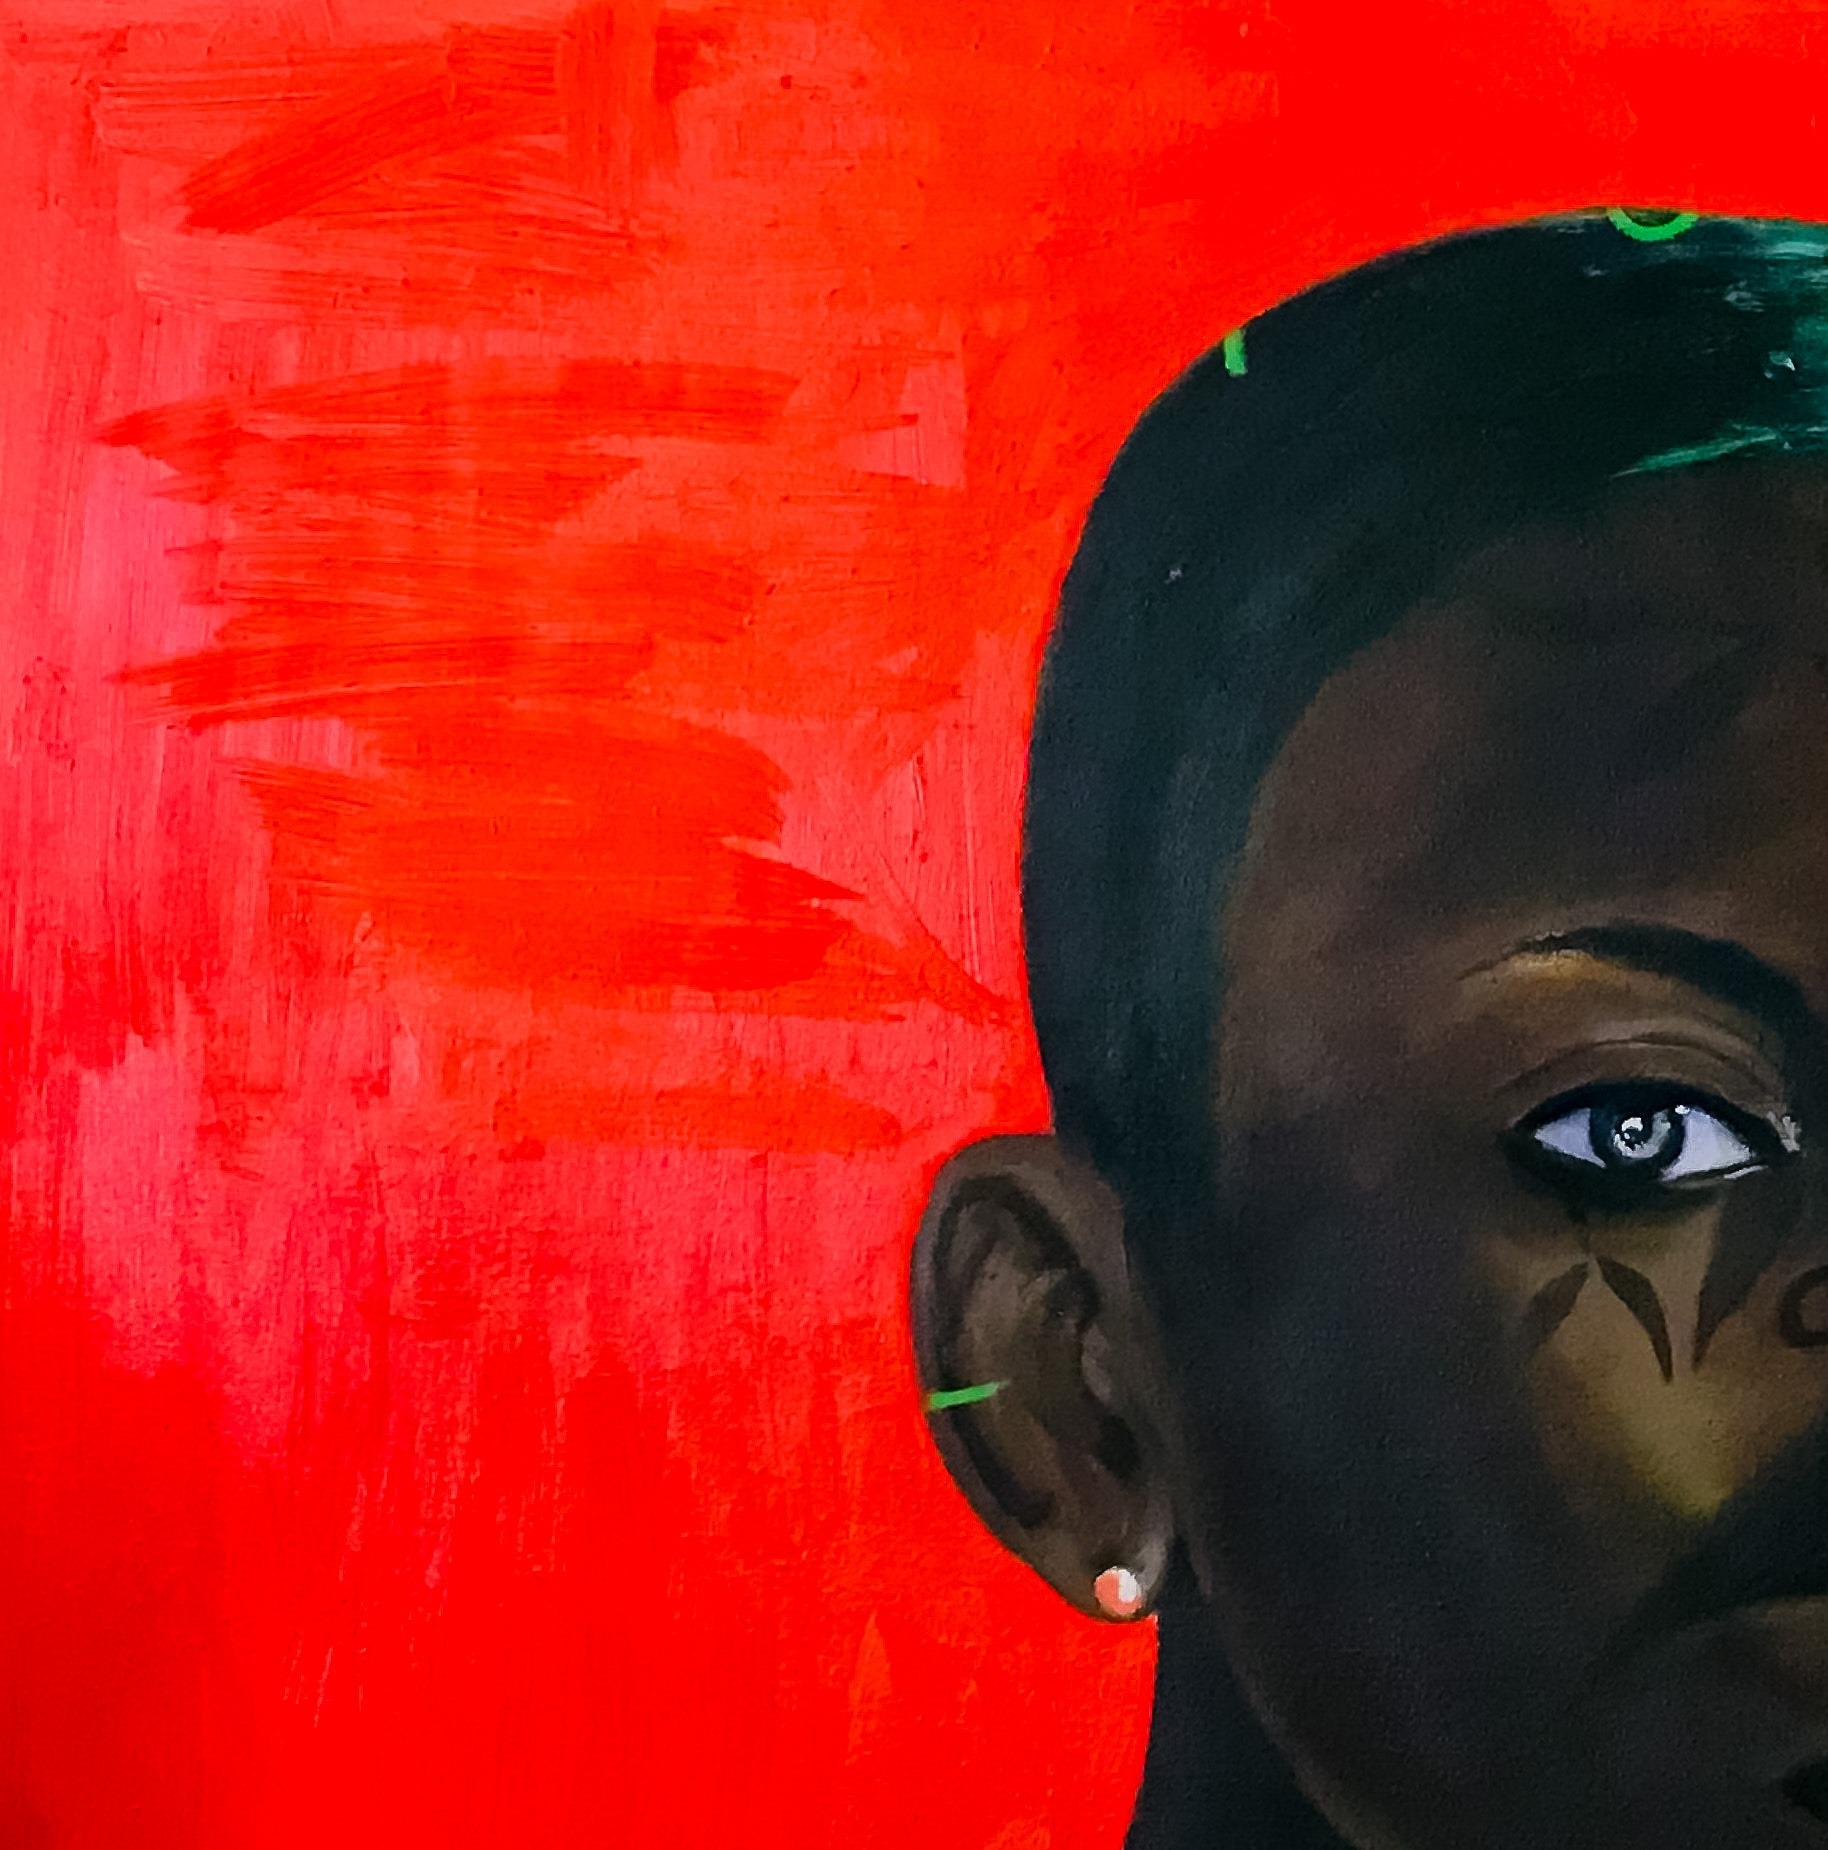 Unbenannt – Painting von Theophilus Madaki